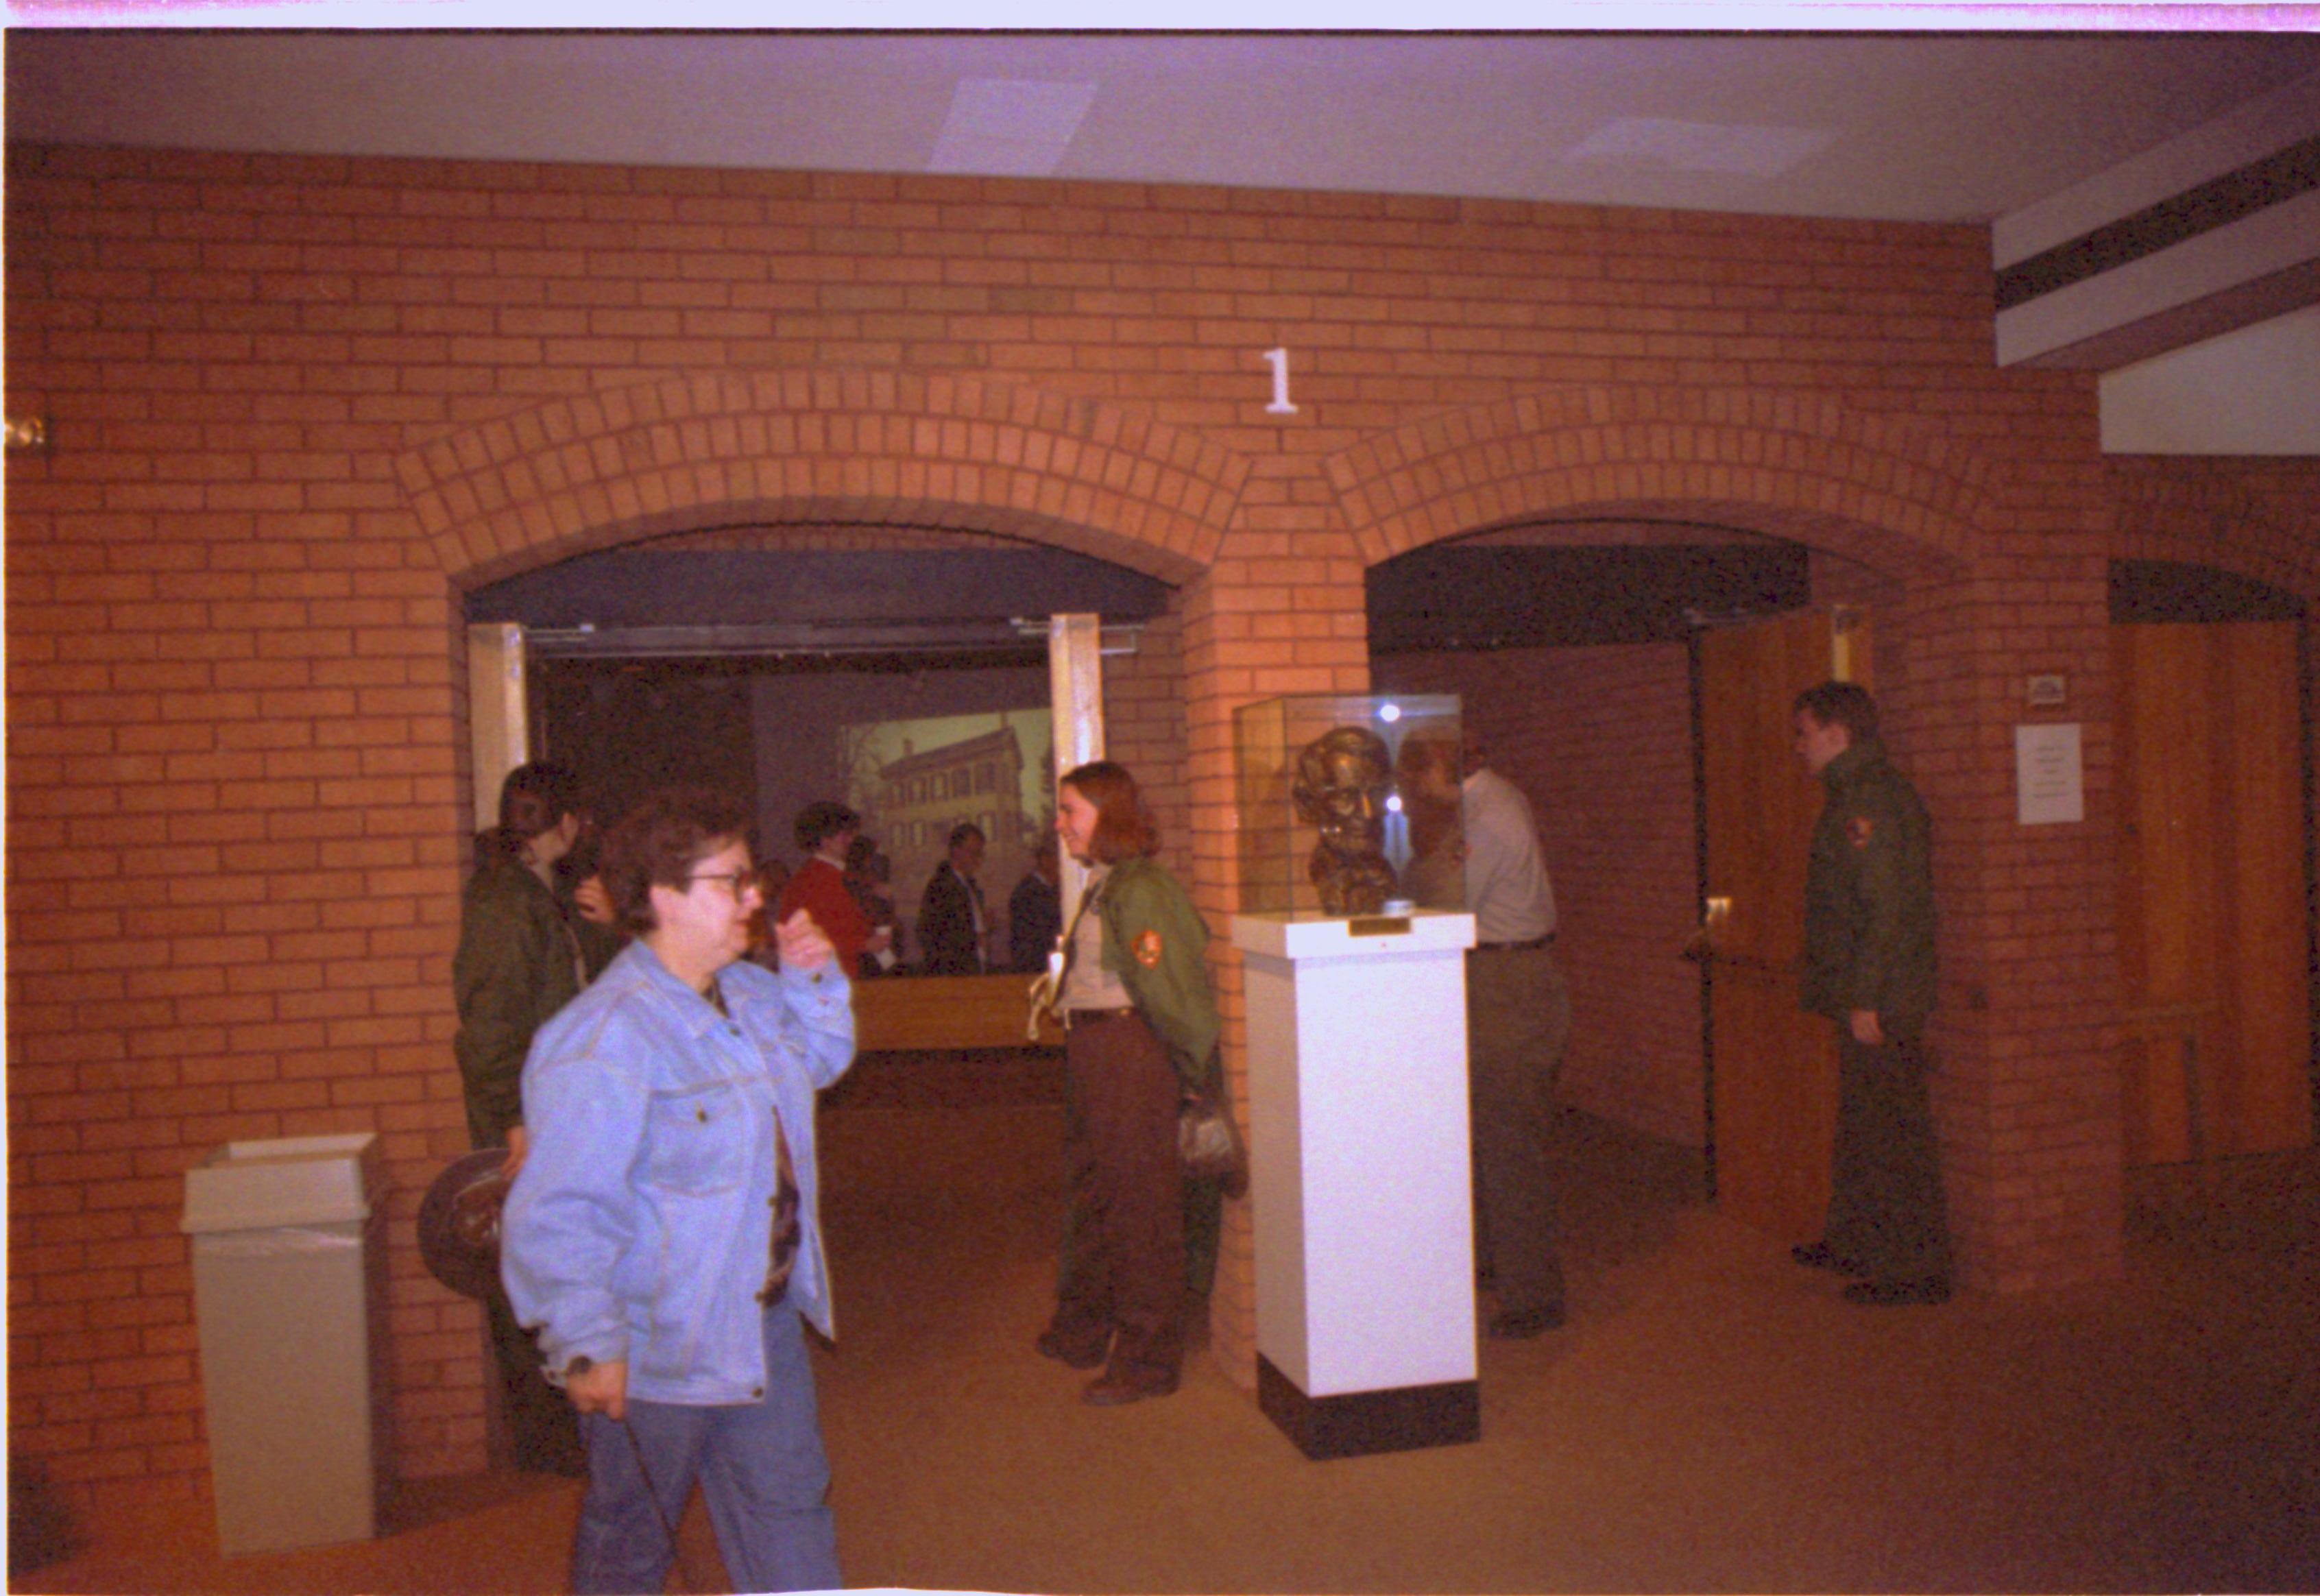 Guests exiting Theater I. 2-1997 Colloq (color); 21 Colloquium, 1997